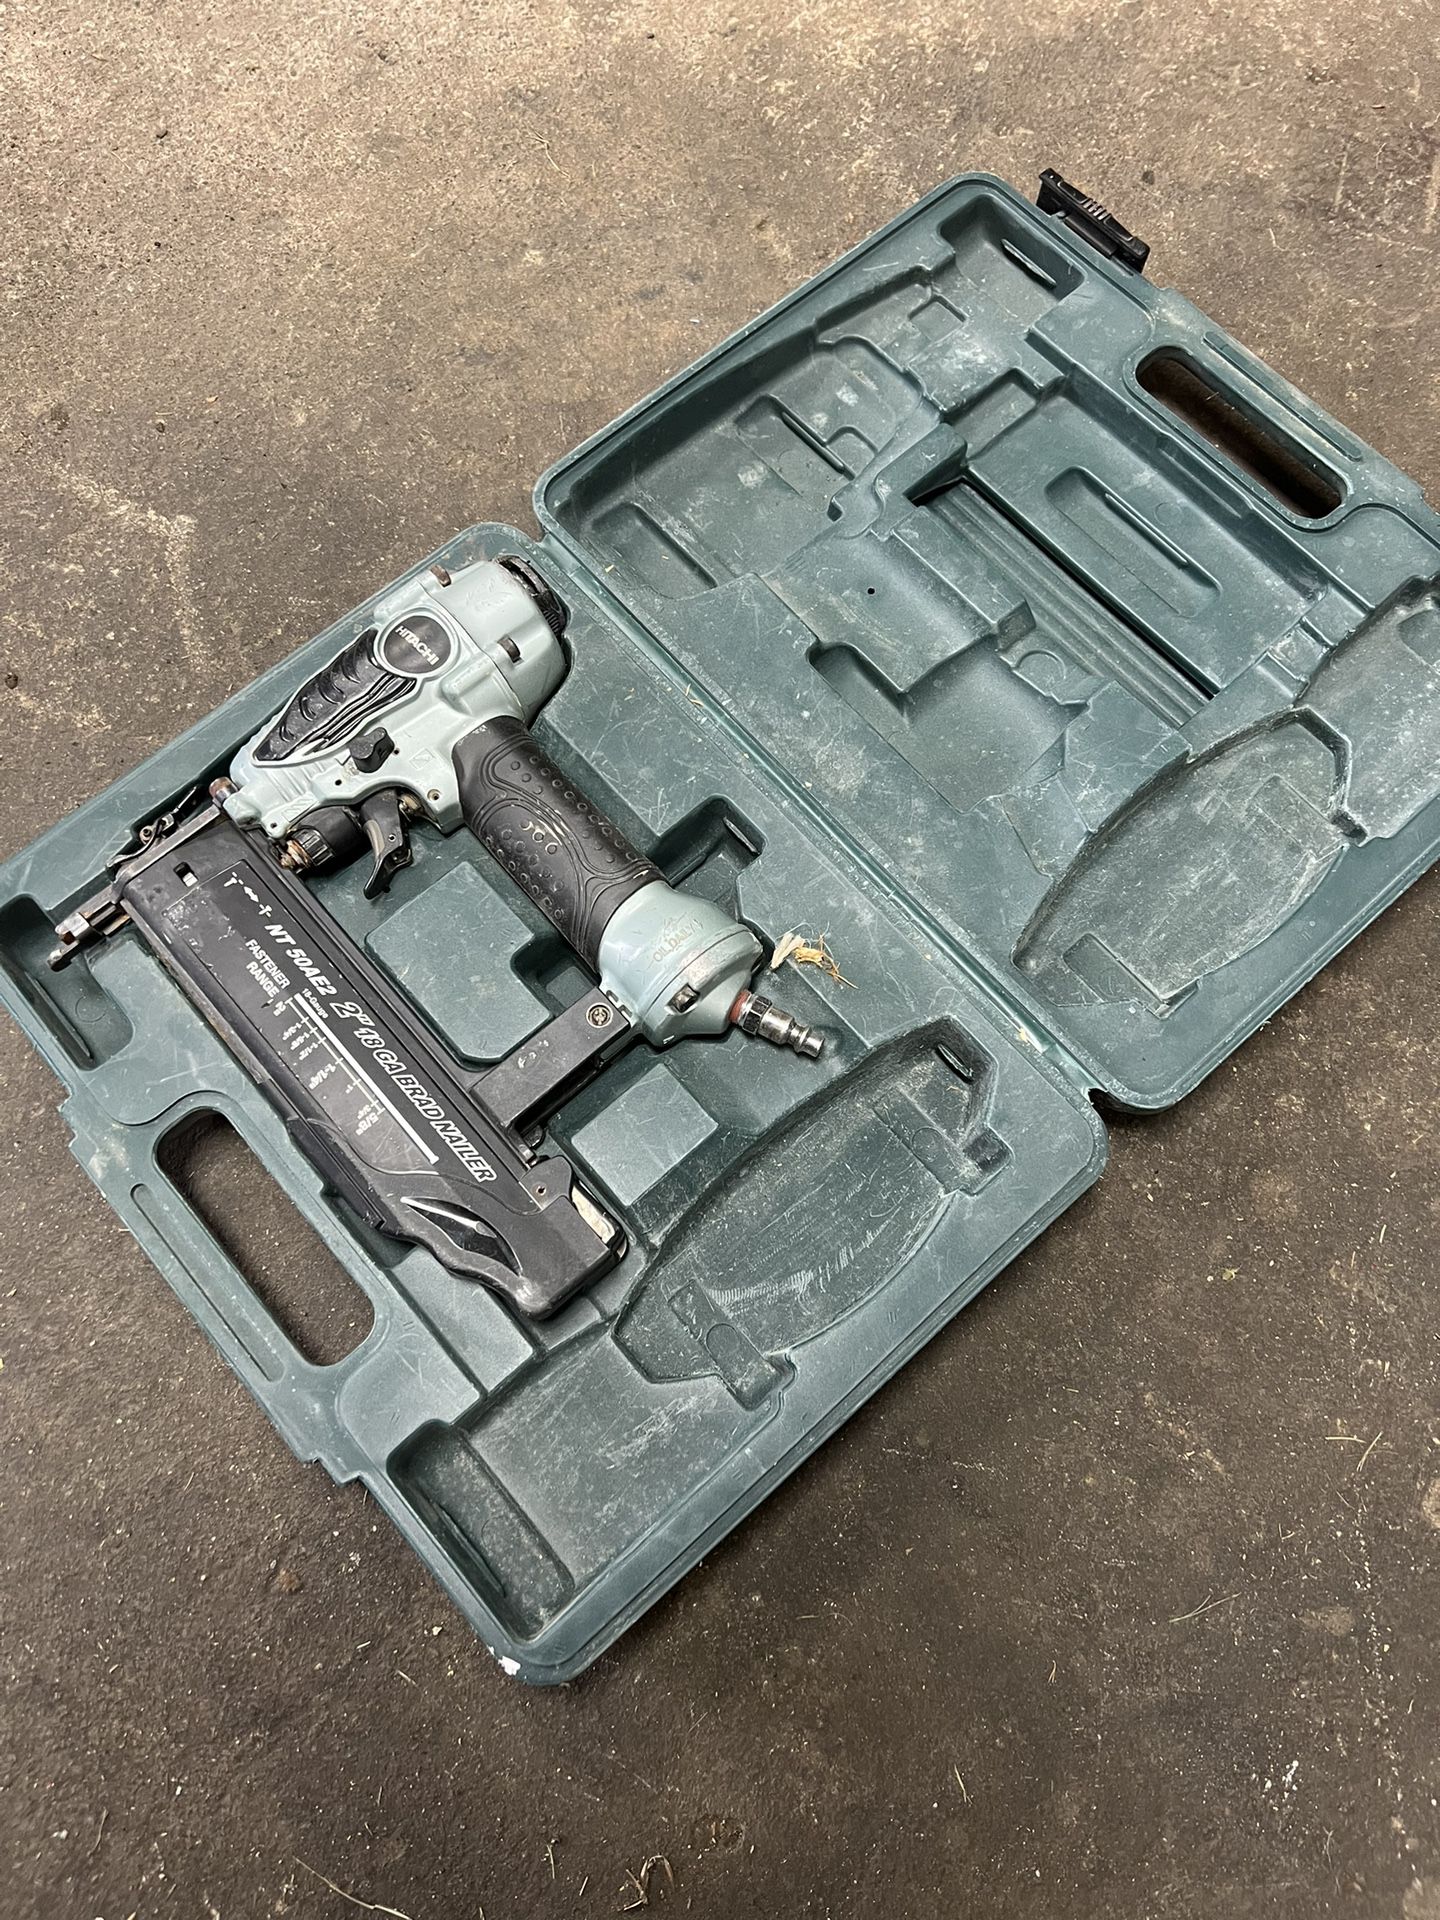 Hitachi finish nail gun NT50AE2 2" 18-Gauge Brad Nailer i not sure if it works